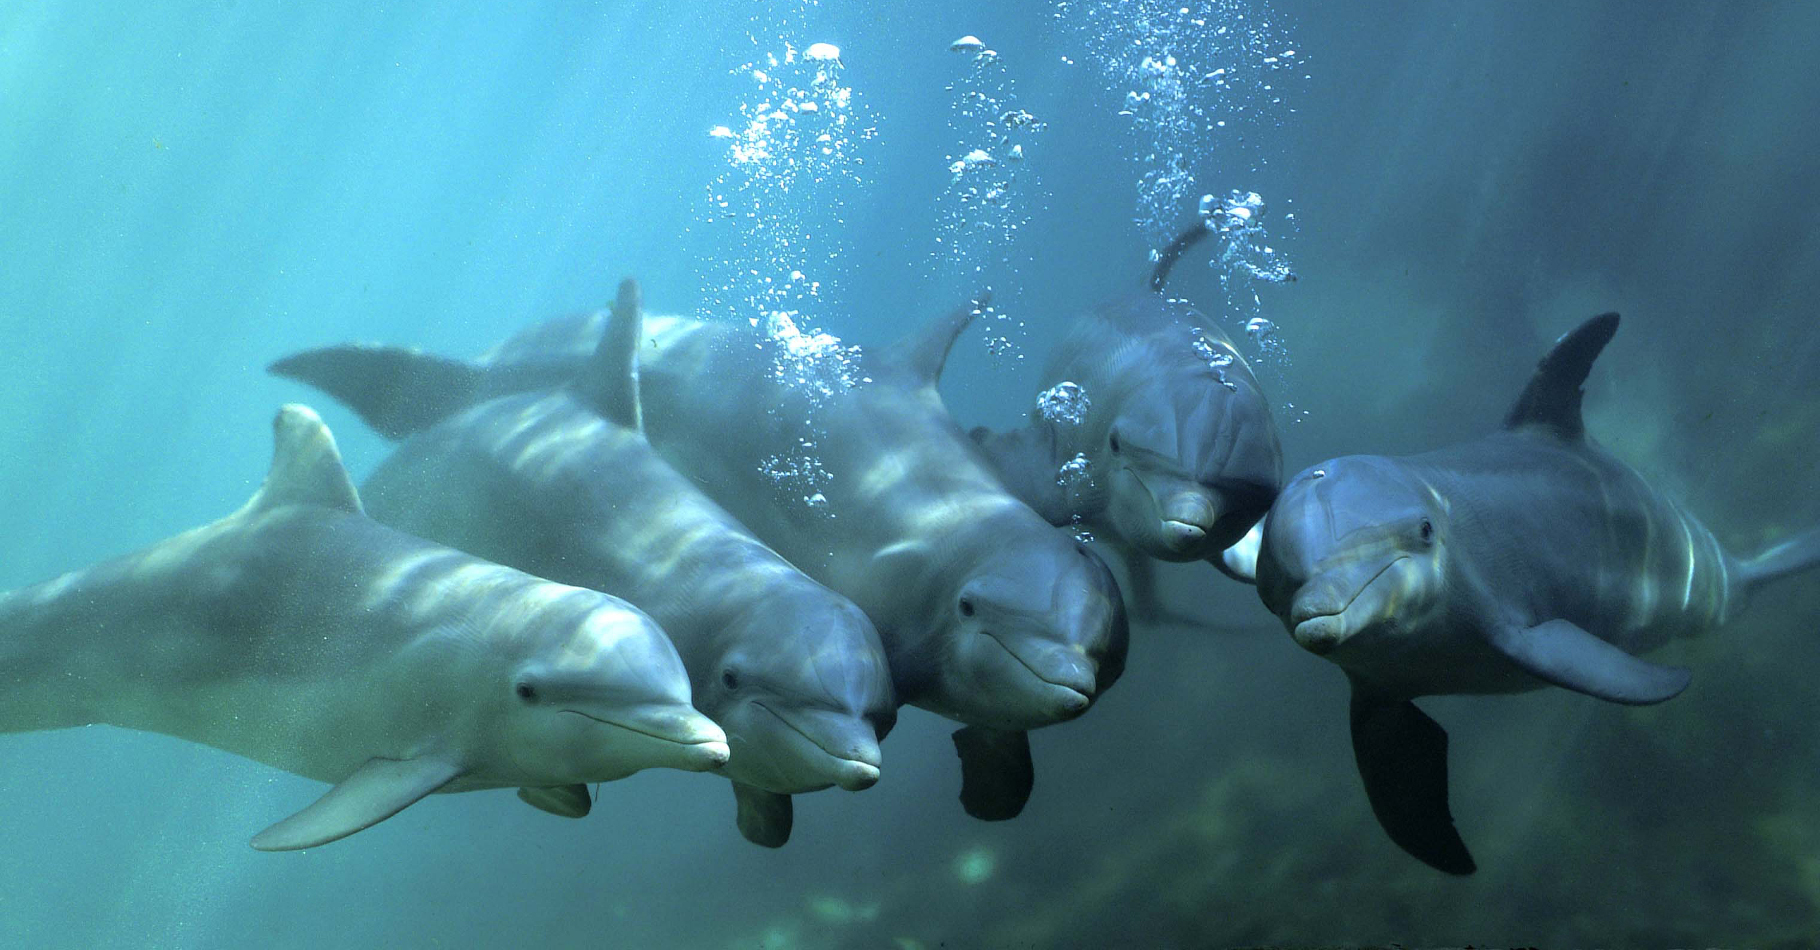 Les grands dauphins interagissent beaucoup et communiquent entre eux par des émissions sonores (et ultrasonores). Les clés de leur langage restent inconnues. Selon un chercheur de Crimée, ces cétacés utiliseraient des sortes de mots qu'ils agenceraient d'une manière équivalente à notre syntaxe. © Truncatus, Wikipédia, DP